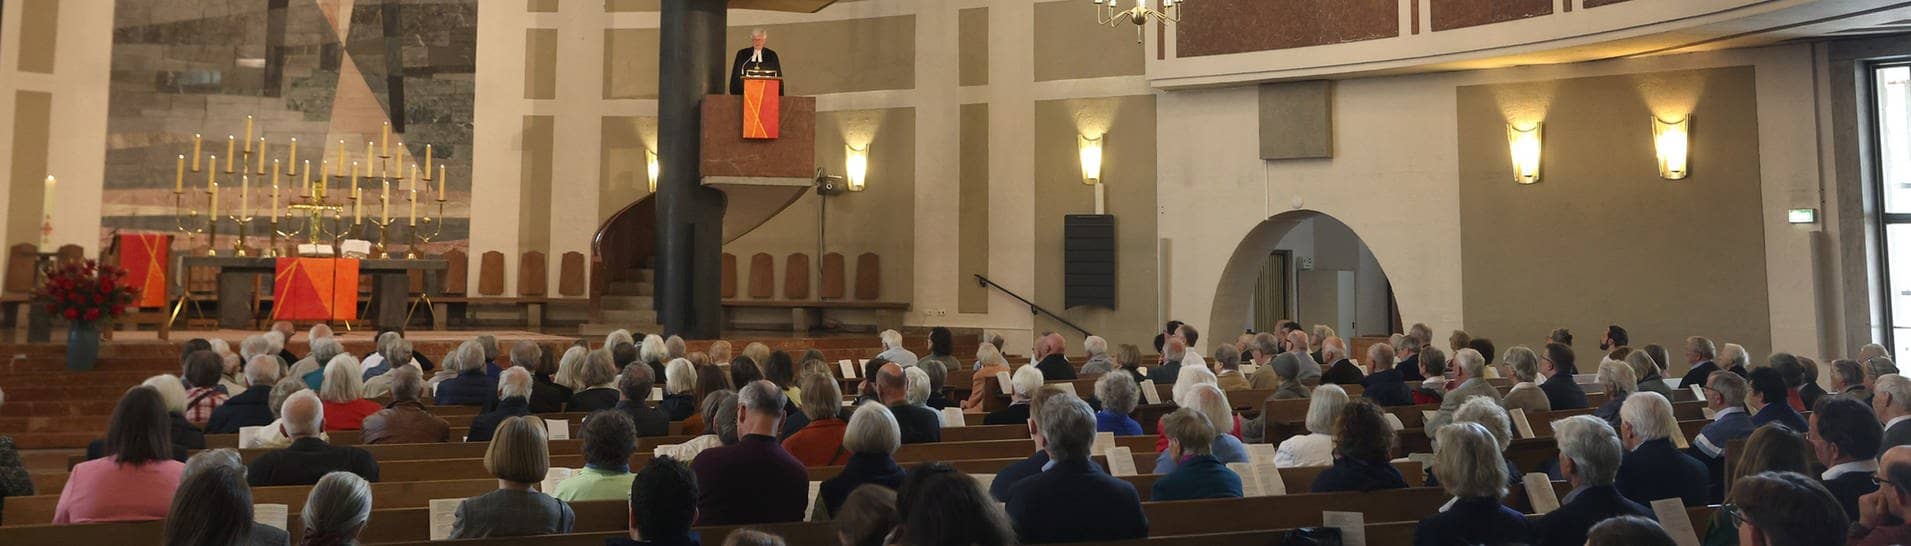 Landesbischof Heinrich Bedford-Strohm predigt bei einem Festgottesdienst in der evangelisch-lutherischen Pfarrkirche St. Matthäus. Die Kirche versucht, durch ausgefallenere Gottesdienste für neue Mitglieder zu werben.